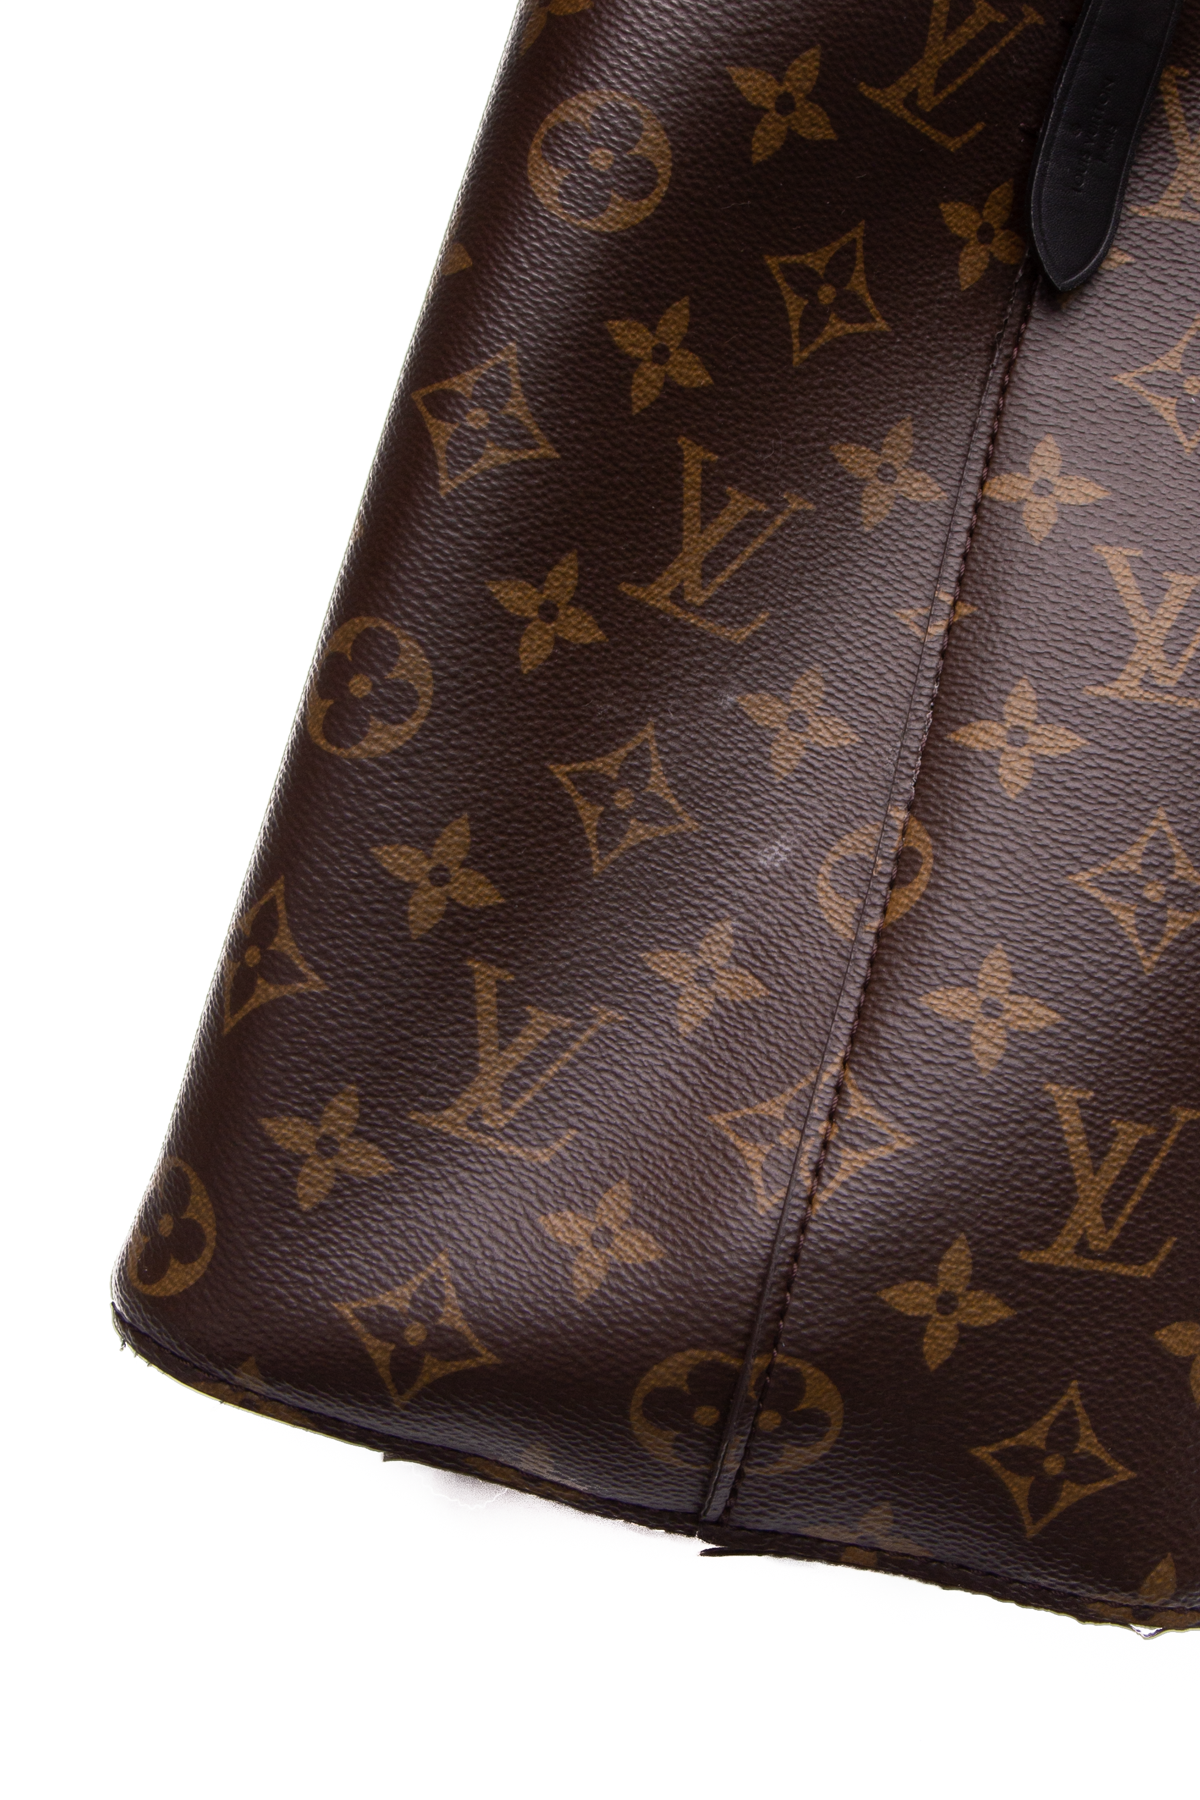 Louis Vuitton Neo Noe MM Bag - Couture USA